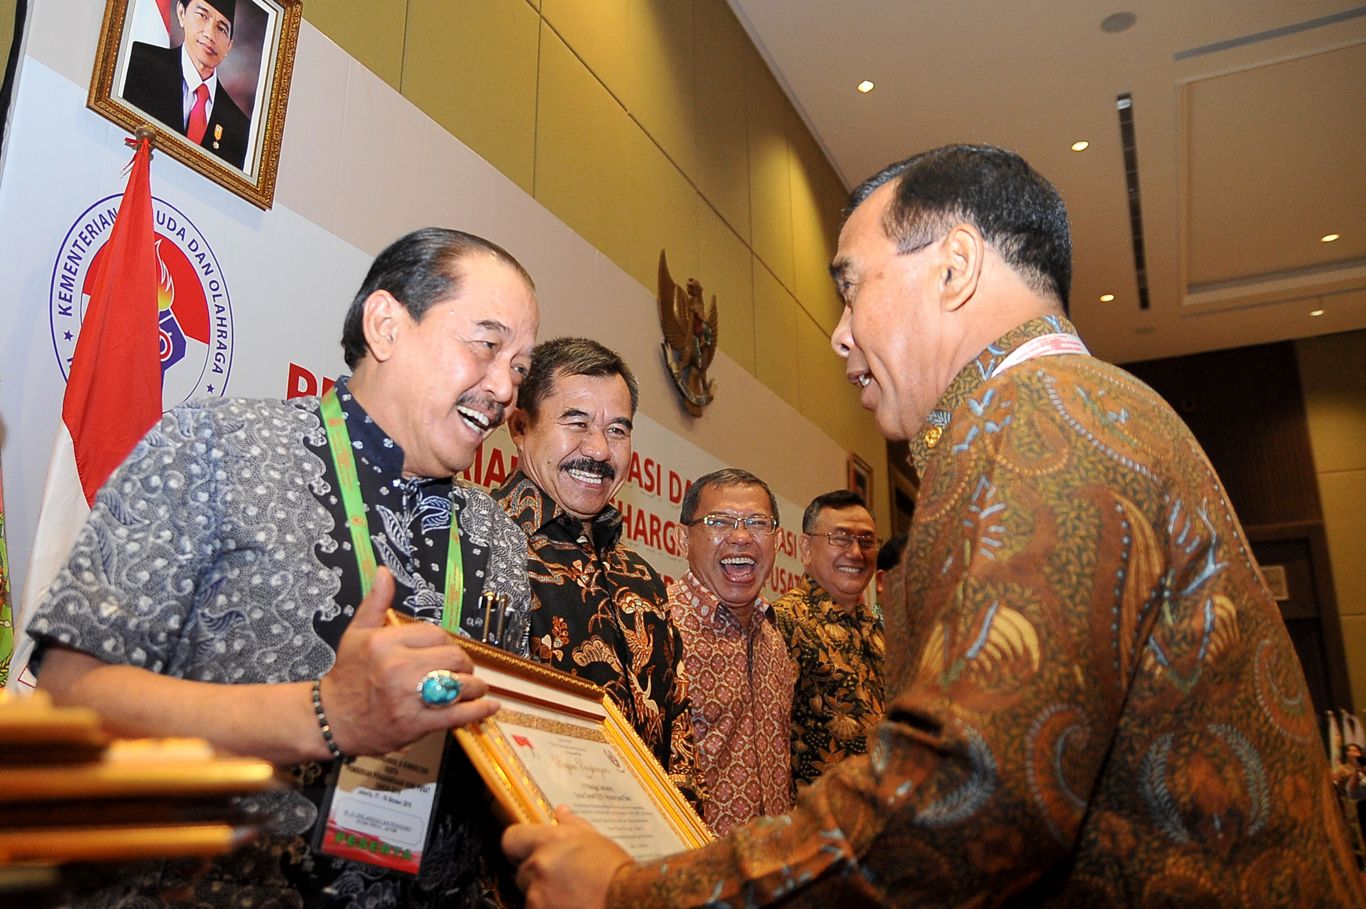 Ketua Umum KONI Jatim Erlangga Satriagung menerima penghargaan yang diserahkan secara langsung oleh Tono Suratman, Ketua Umum KONI itu. (foto: Humas)